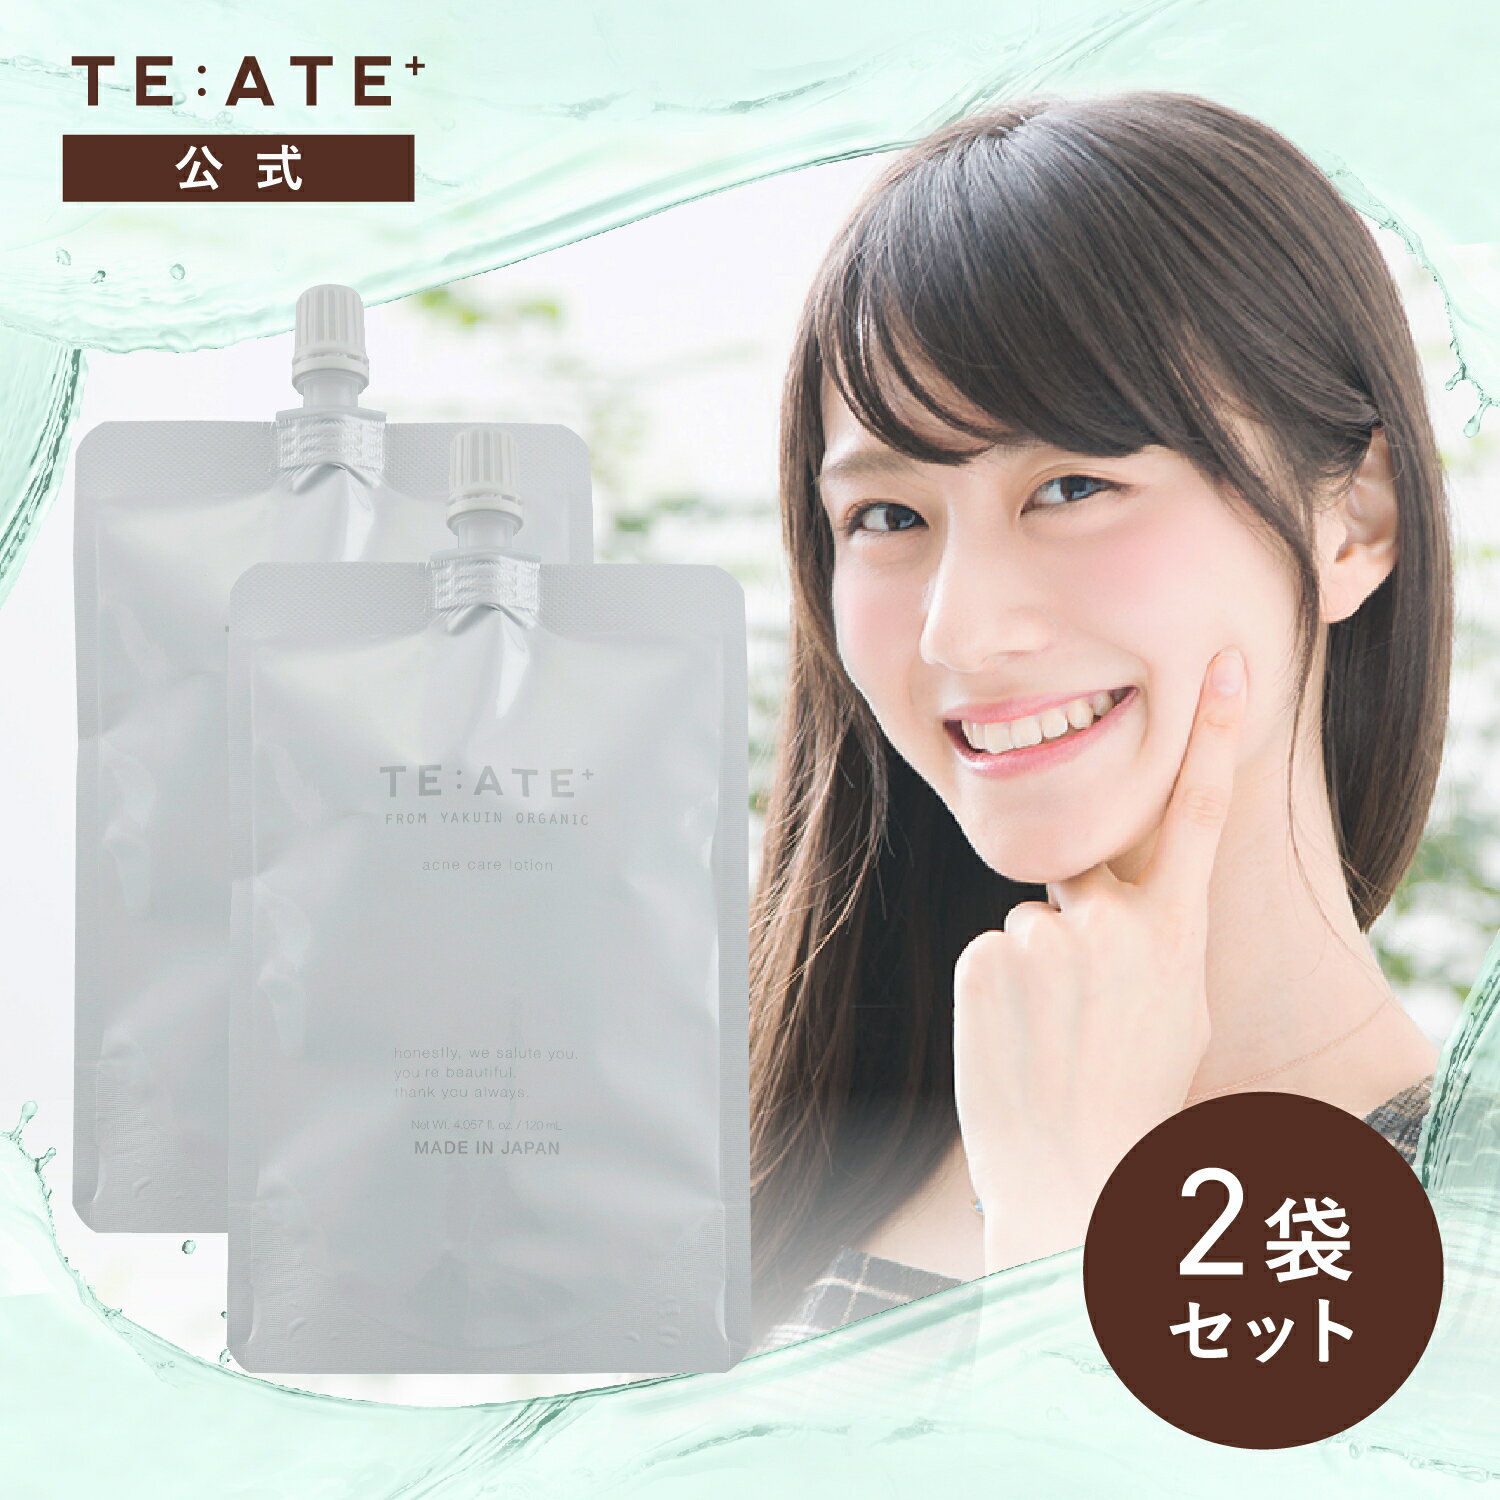 【公式】テアテプラス 詰め替え用2袋セット 化粧水 TE:A